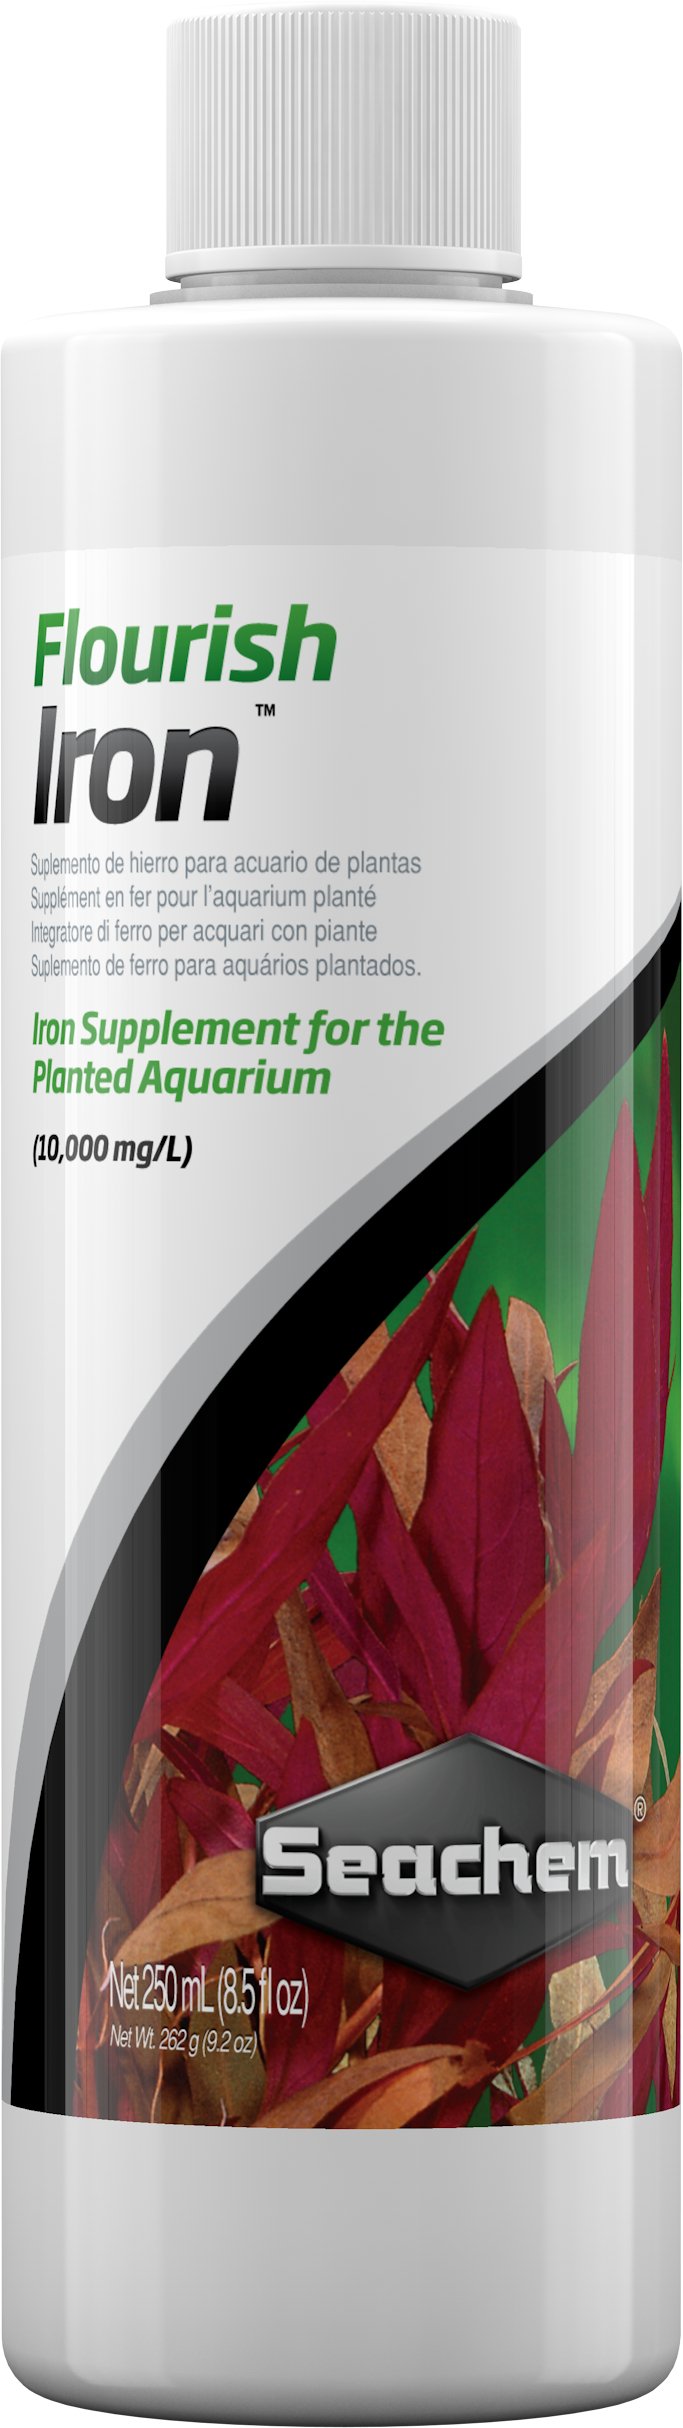 Flourish Iron - Discus Roa Fish